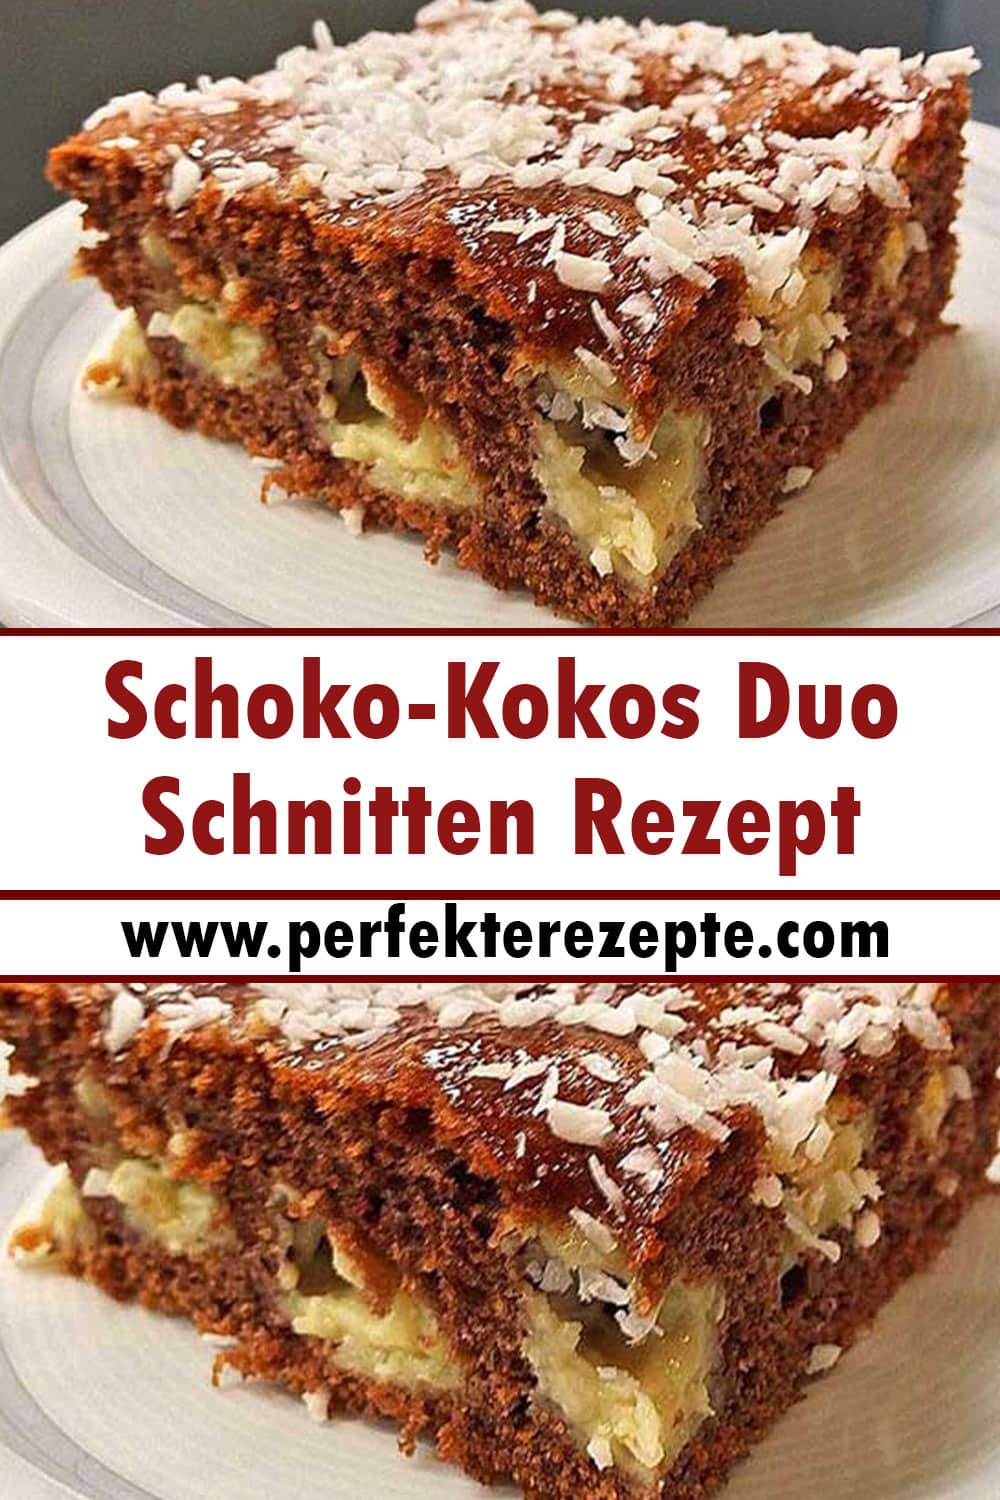 Schoko-Kokos Duo Schnitten Rezept